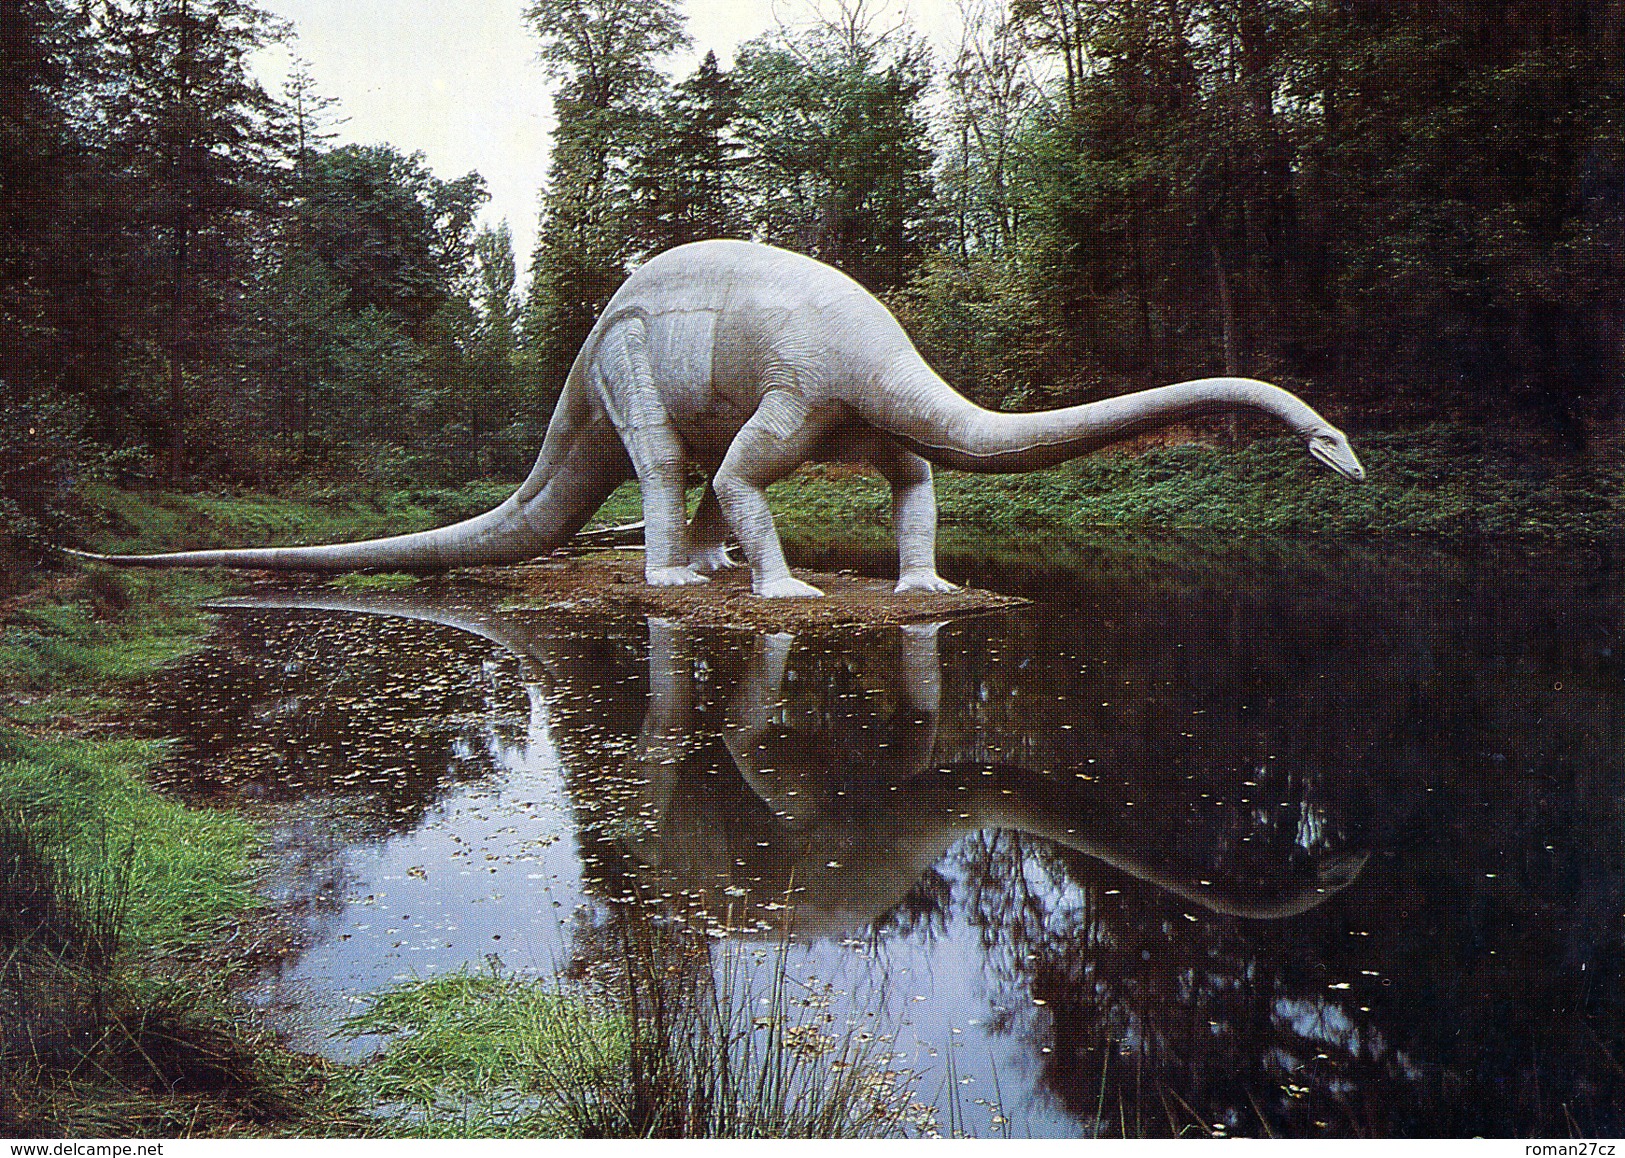 Saurierpark Kleinwelka, Germany, Ca. 1980s, Dinosaur - Diplodocus - Bautzen